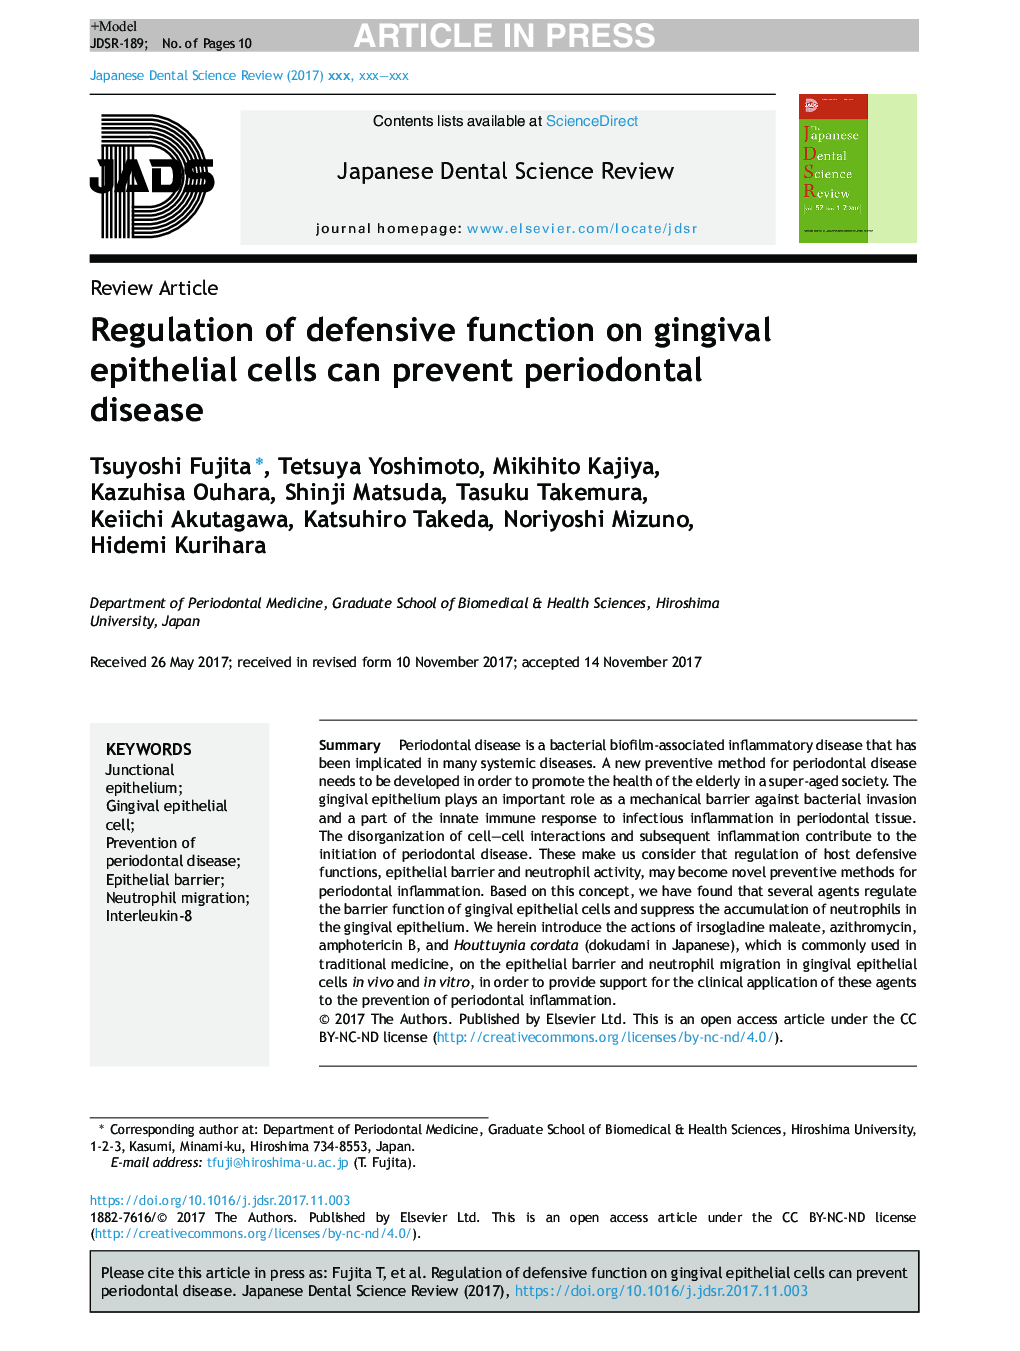 تنظیم عملکرد دفاعی در سلول های اپیتلیال لثه می تواند از بیماری های پریودنتال جلوگیری کند 